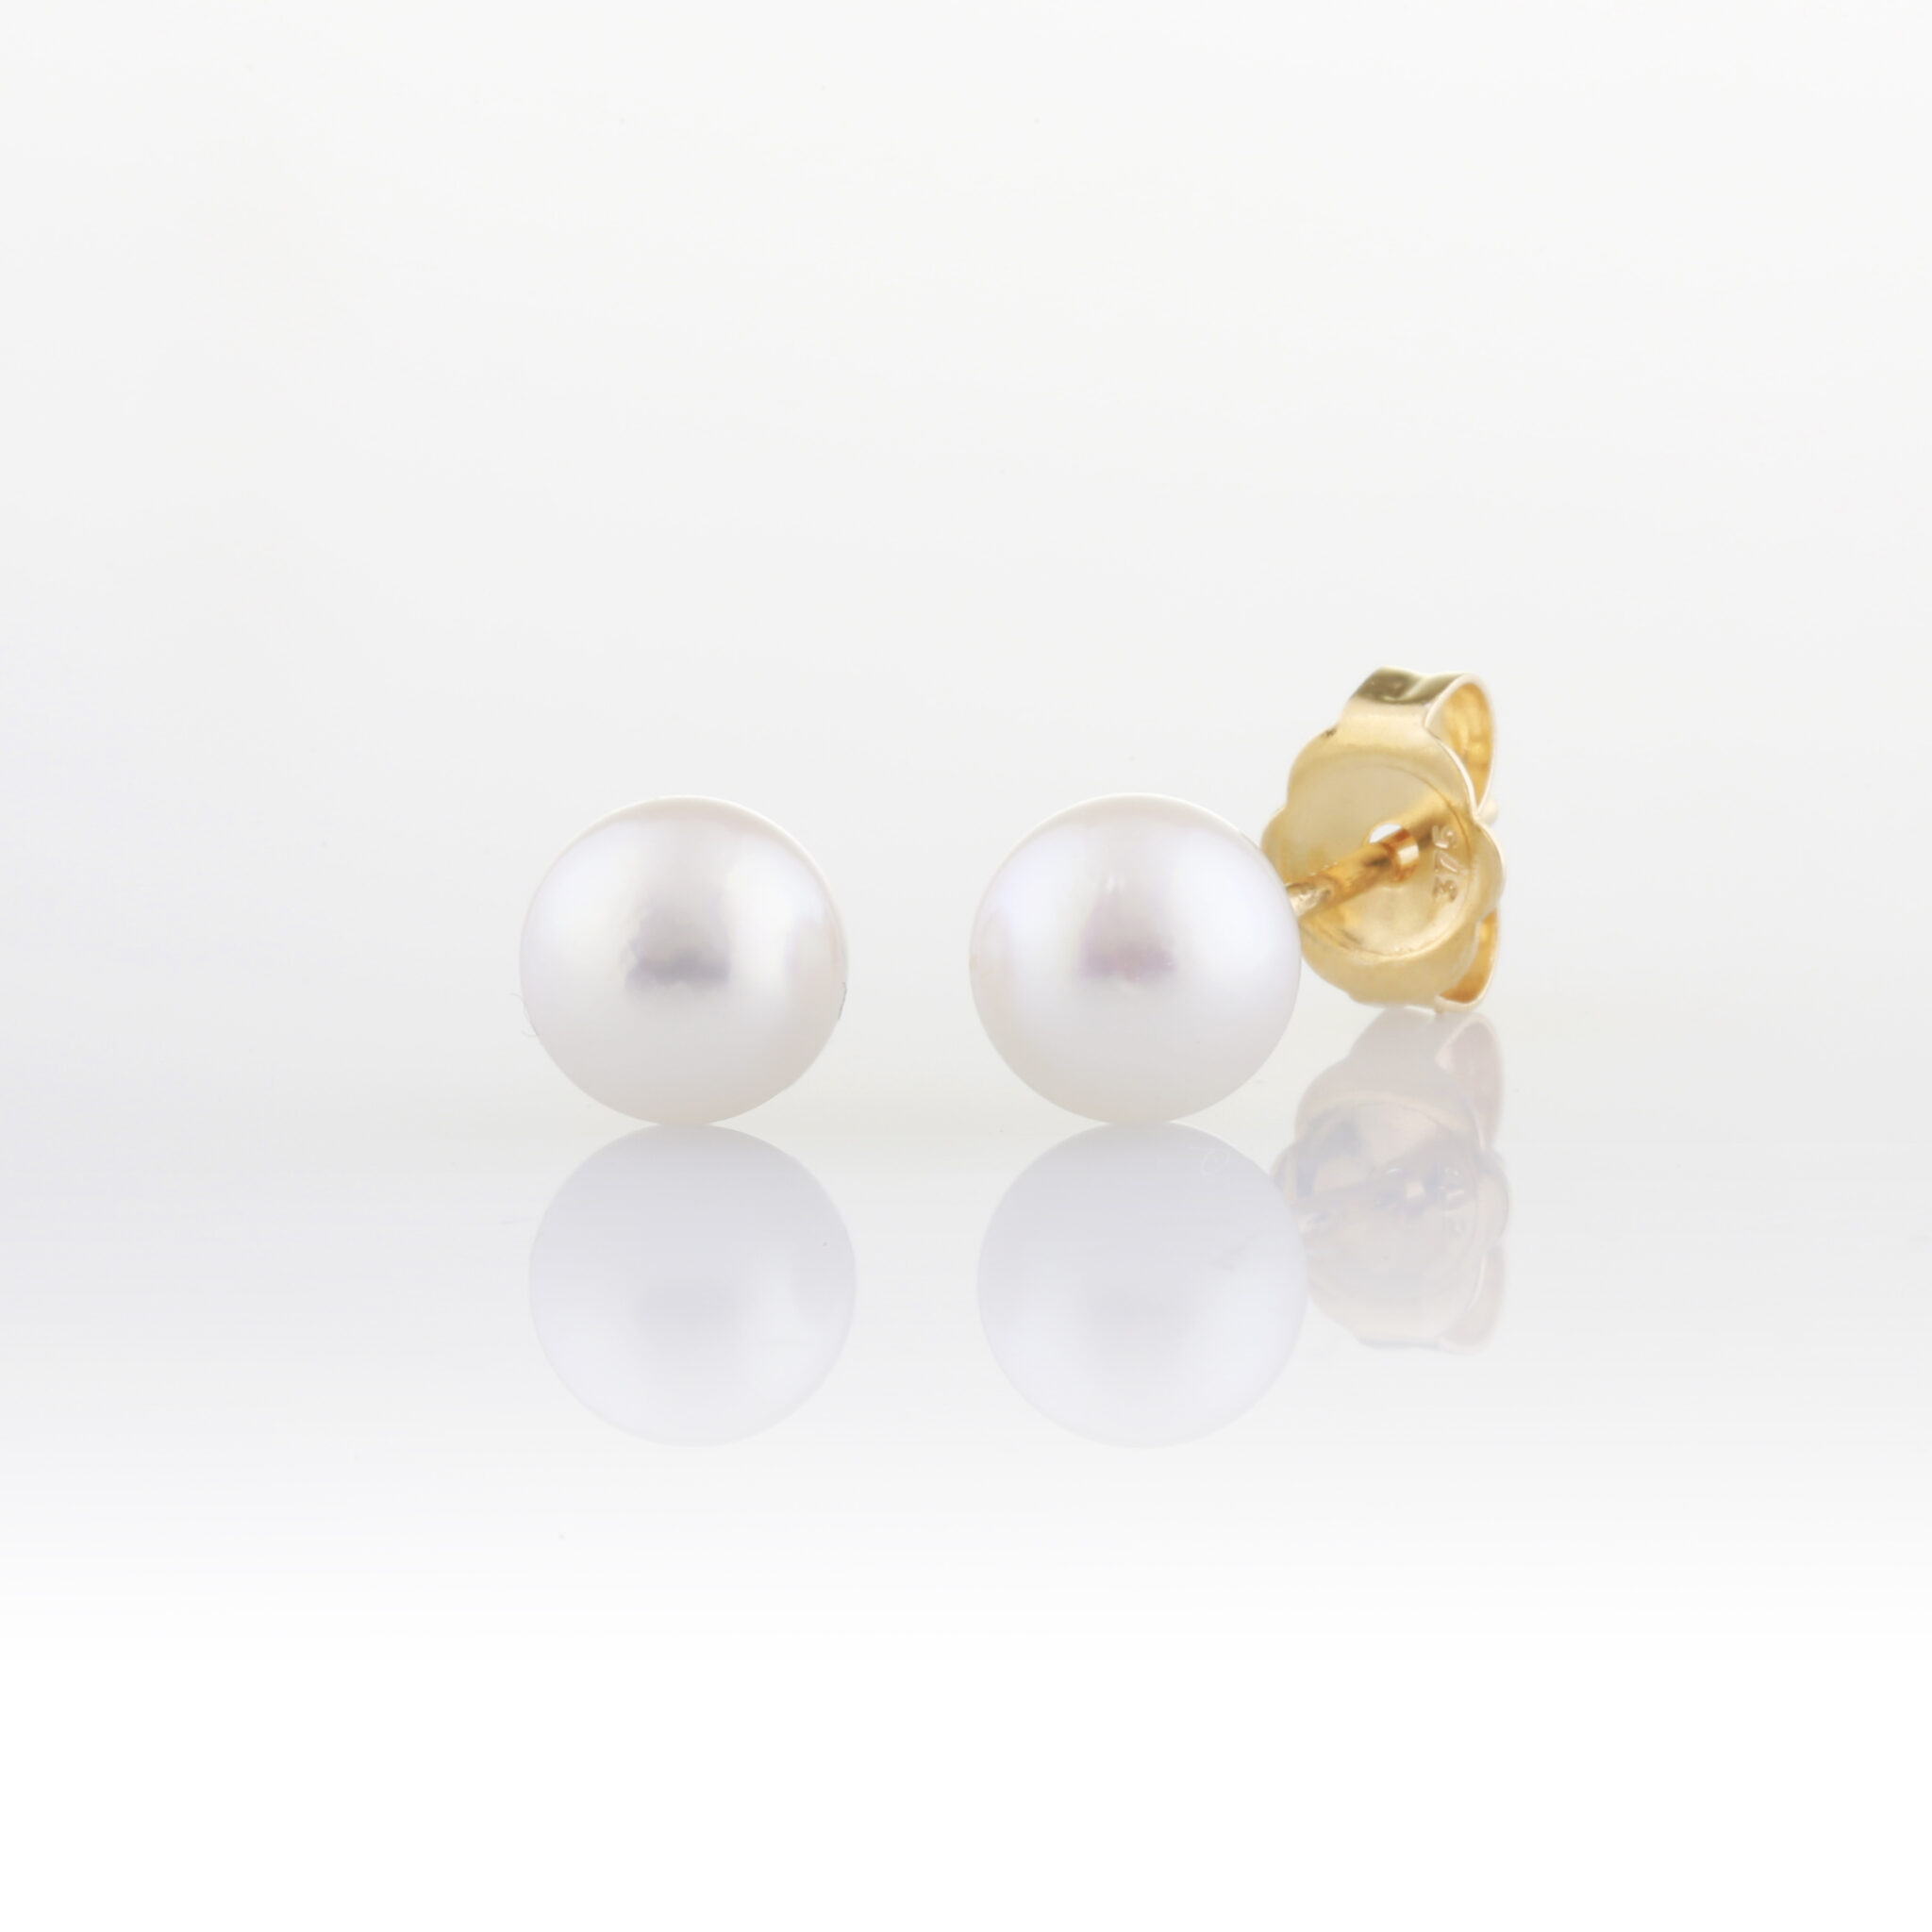 5.5mm pearl studs